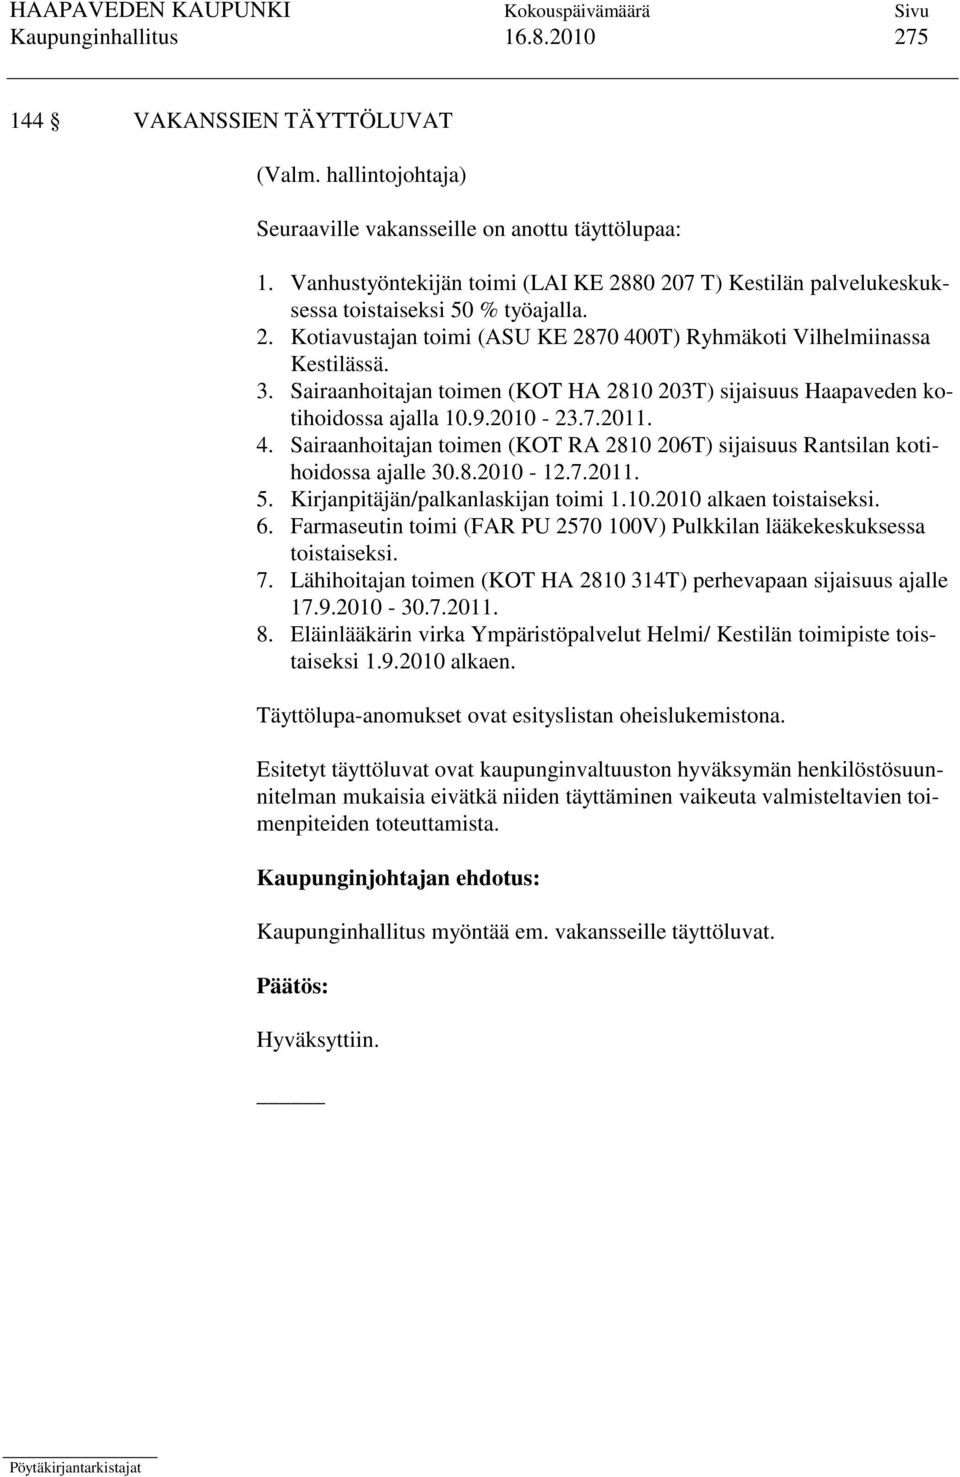 Sairaanhoitajan toimen (KOT HA 2810 203T) sijaisuus Haapaveden kotihoidossa ajalla 10.9.2010-23.7.2011. 4. Sairaanhoitajan toimen (KOT RA 2810 206T) sijaisuus Rantsilan kotihoidossa ajalle 30.8.2010-12.